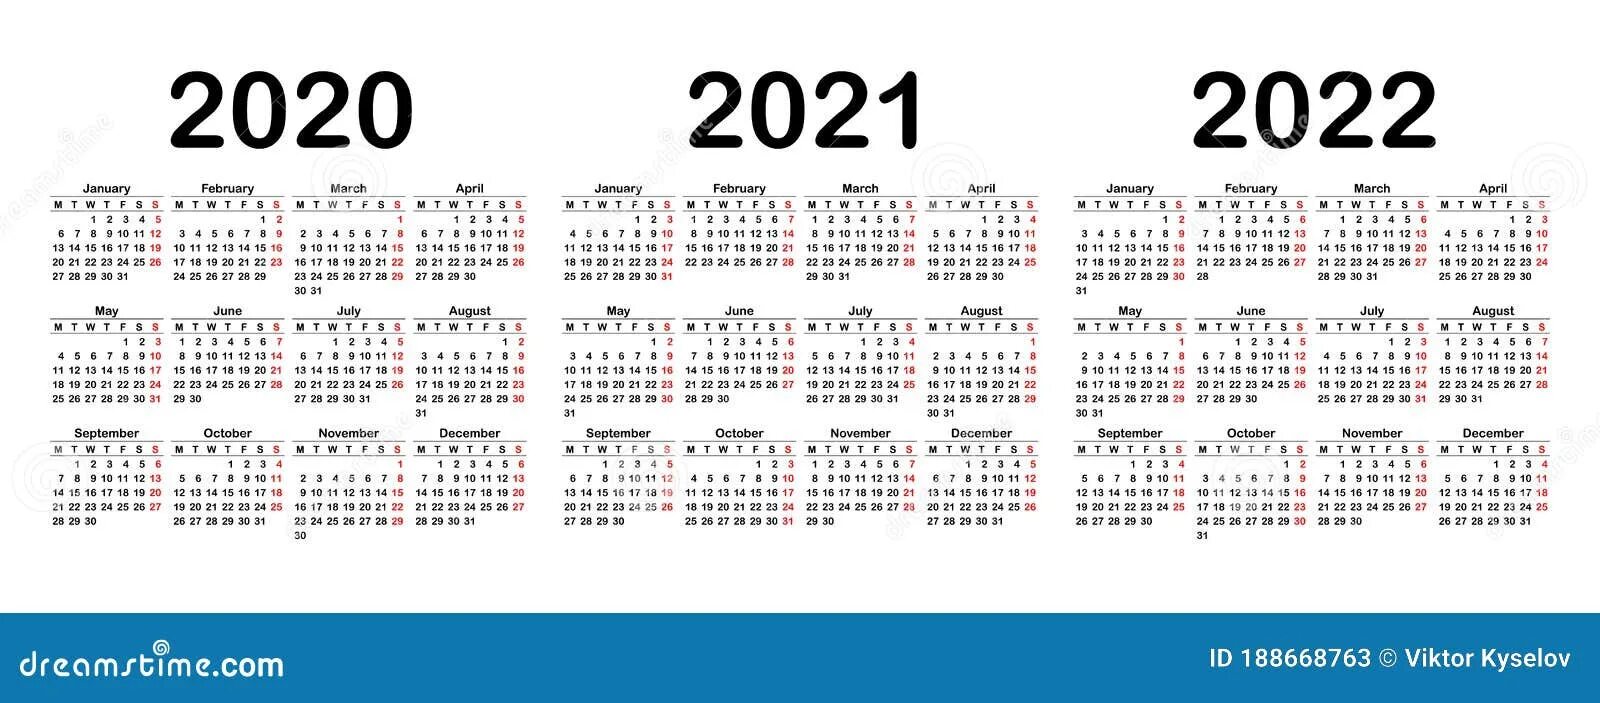 Календарь 2020 2021 2022. Календарь 2021-2022гг. Календари 2020, 2021 и 2022 годов. Календарь с номерами недель 2022.